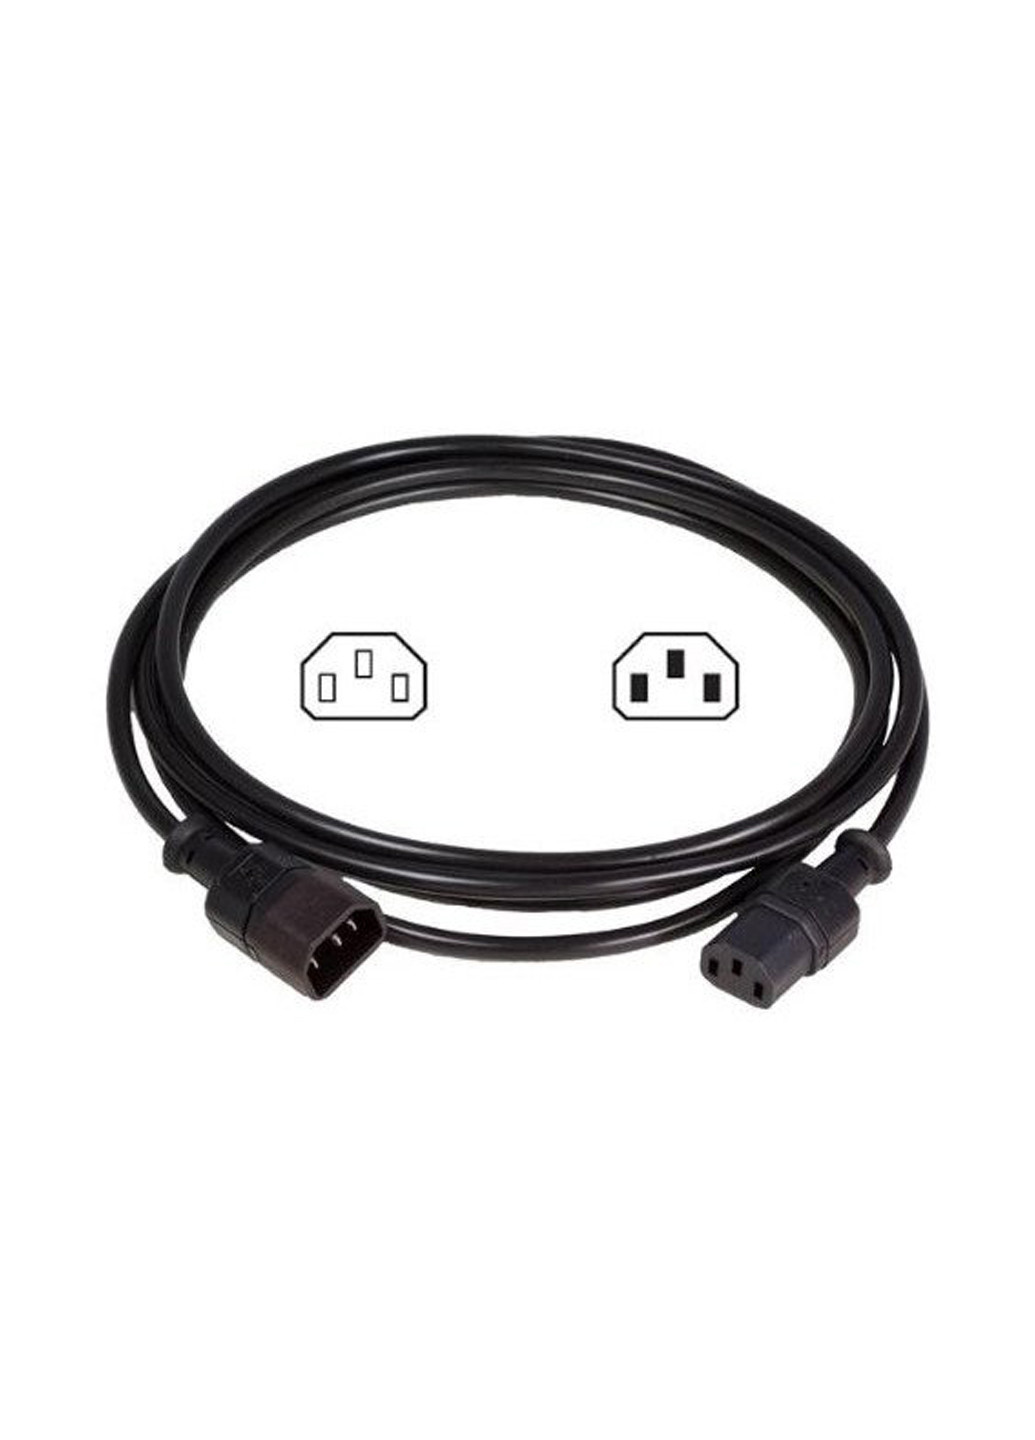 Мережевий кабель (C14 / M - C13 / F) 1.8m, black (AK-440201-018-S) Digitus (c14/m - c13/f) 1.8m, black (ak-440201-018-s) (136463828)